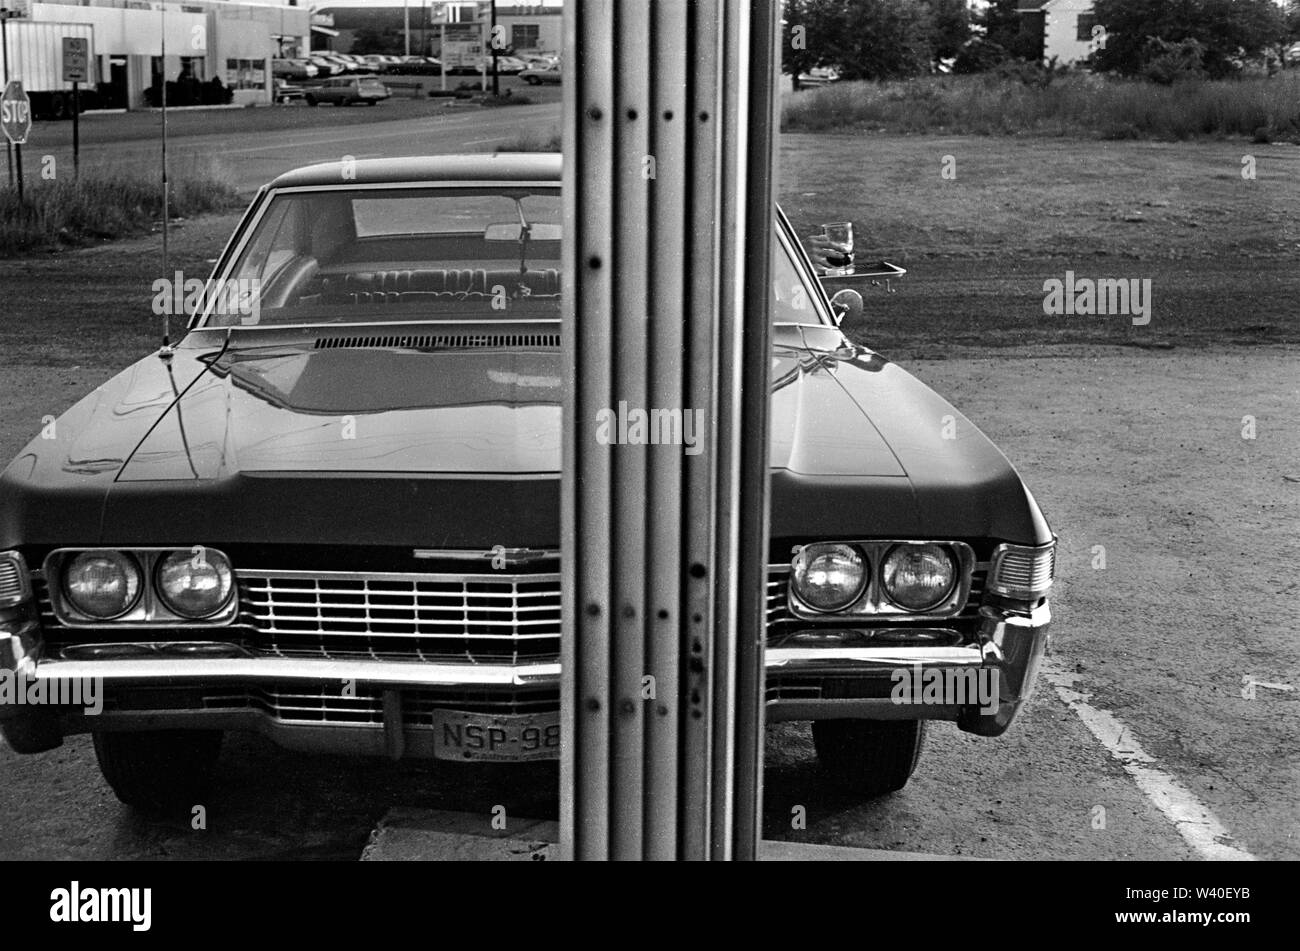 Guida negli anni '60 ristorante fast food americano, piccolo tavolo fissato alla porta dell'auto quando arriva l'ordine. New Brunswick, New Jersey. 1969, USA 60S HOMER SYKES Foto Stock